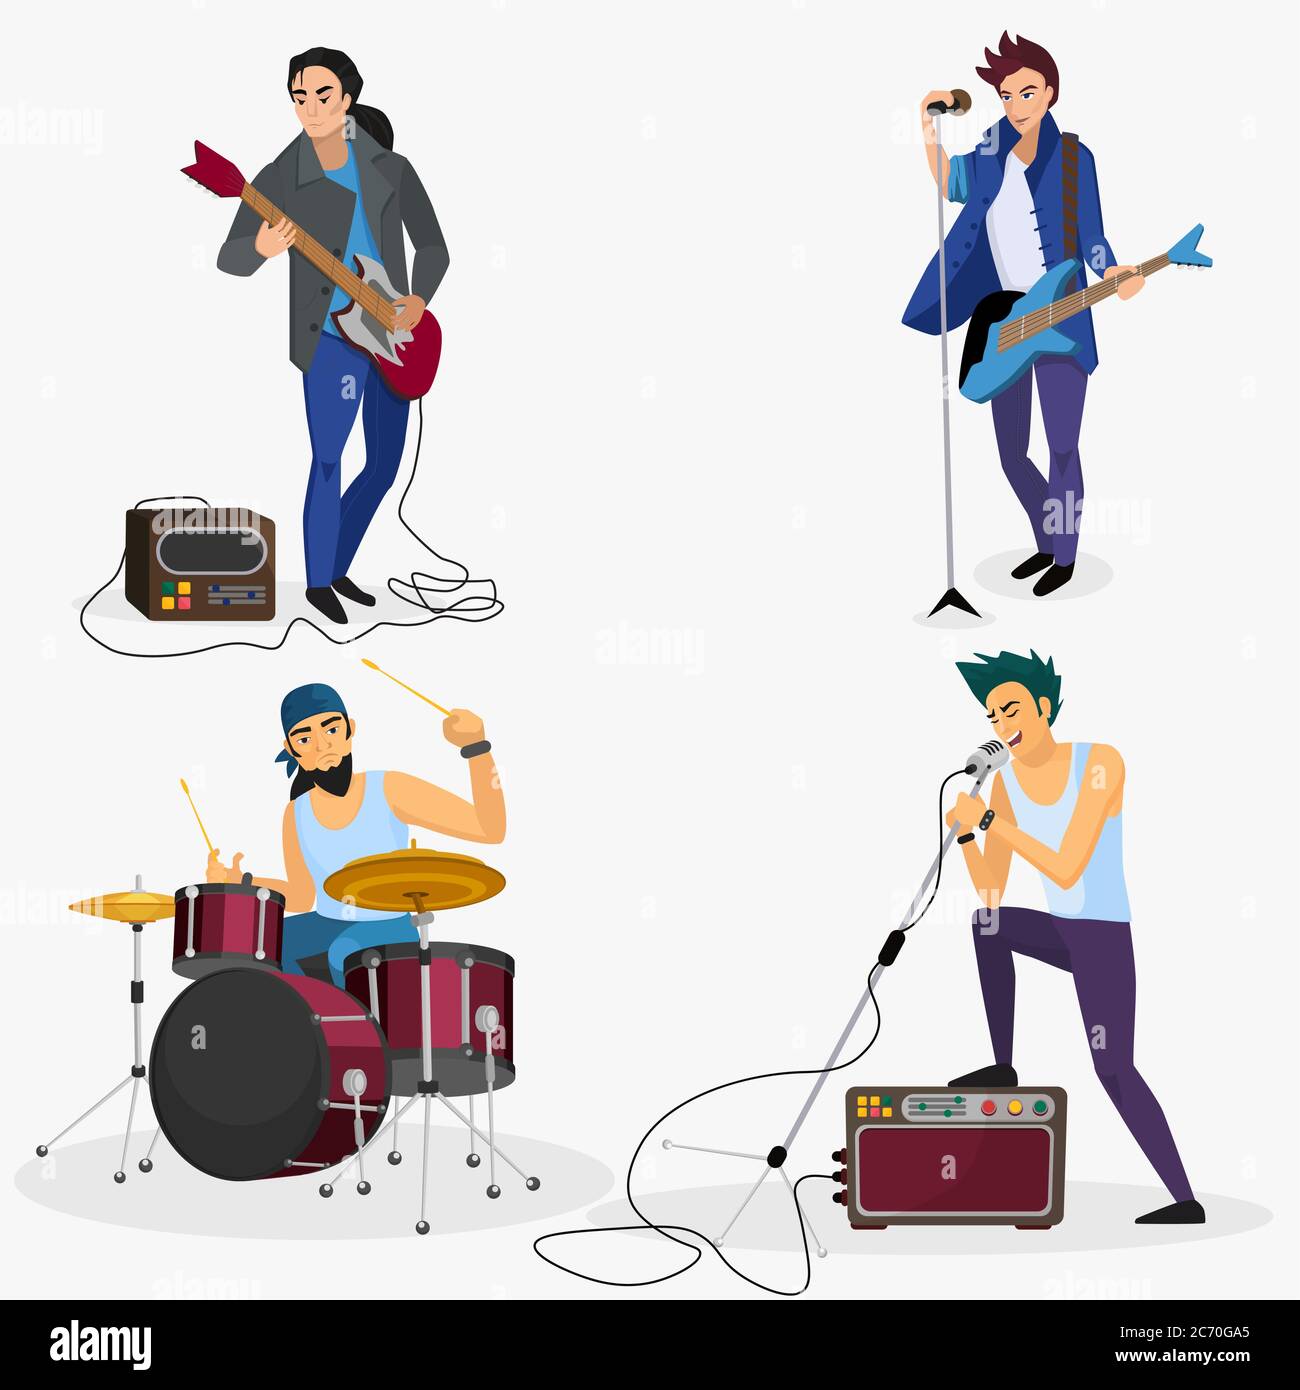 Membres du groupe Rock isolés. Groupe musical chanteur, batteur, guitariste dessin animé vectoriel Illustration de Vecteur